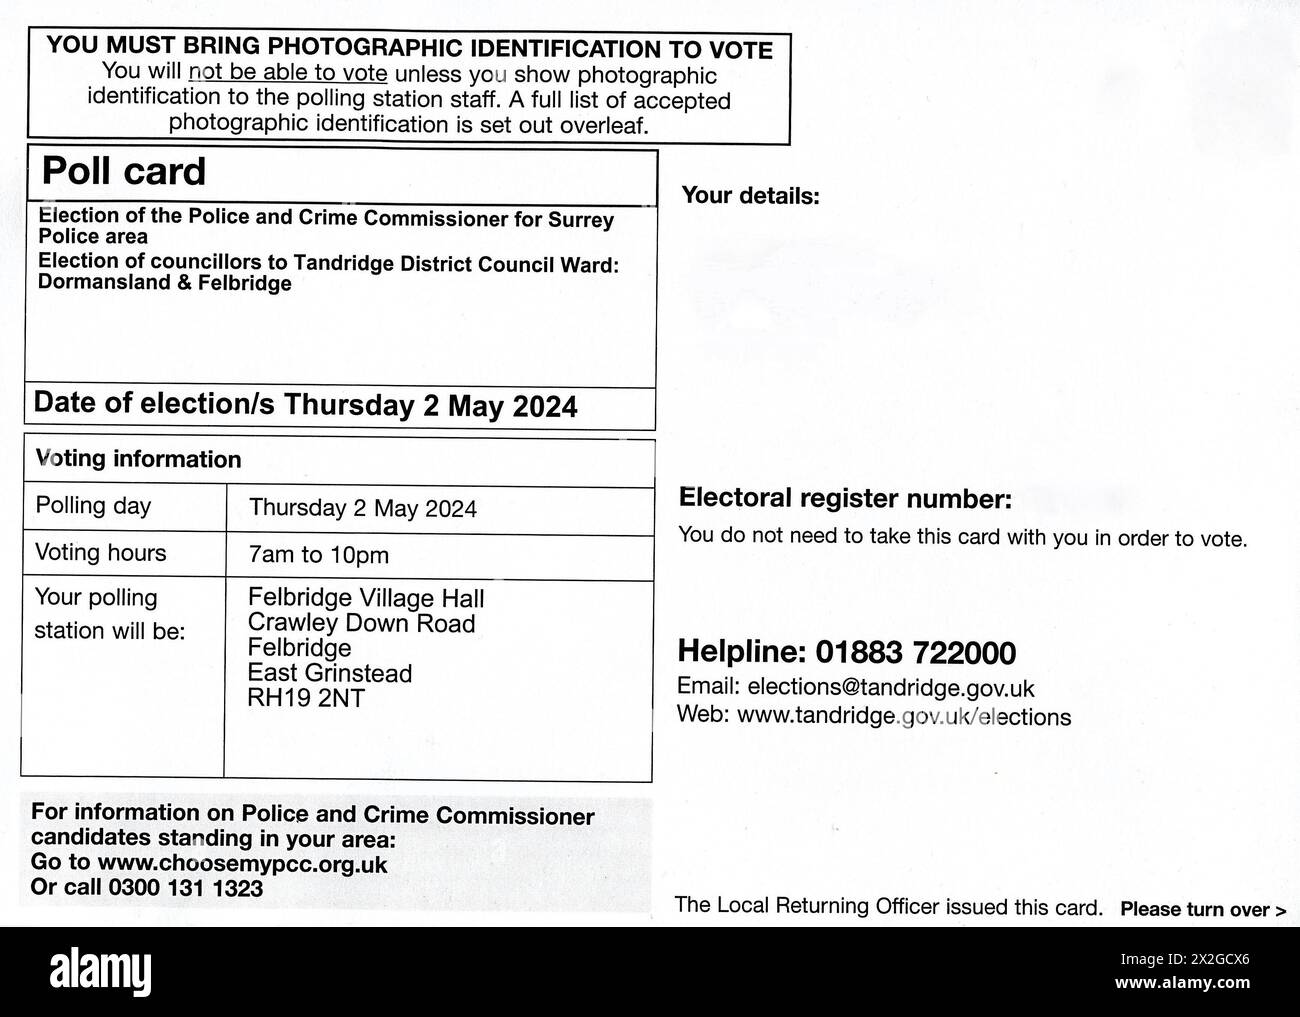 Wahlkarte für die Wahlen zur britischen Kommunalregierung am 2. Mai 2024. Die abgebildete Karte ist für den Polizei- und Kriminalkommissar für Surrey und für den Bezirk Dormansland und Felbridge für den Tandridge District Council. Stockfoto